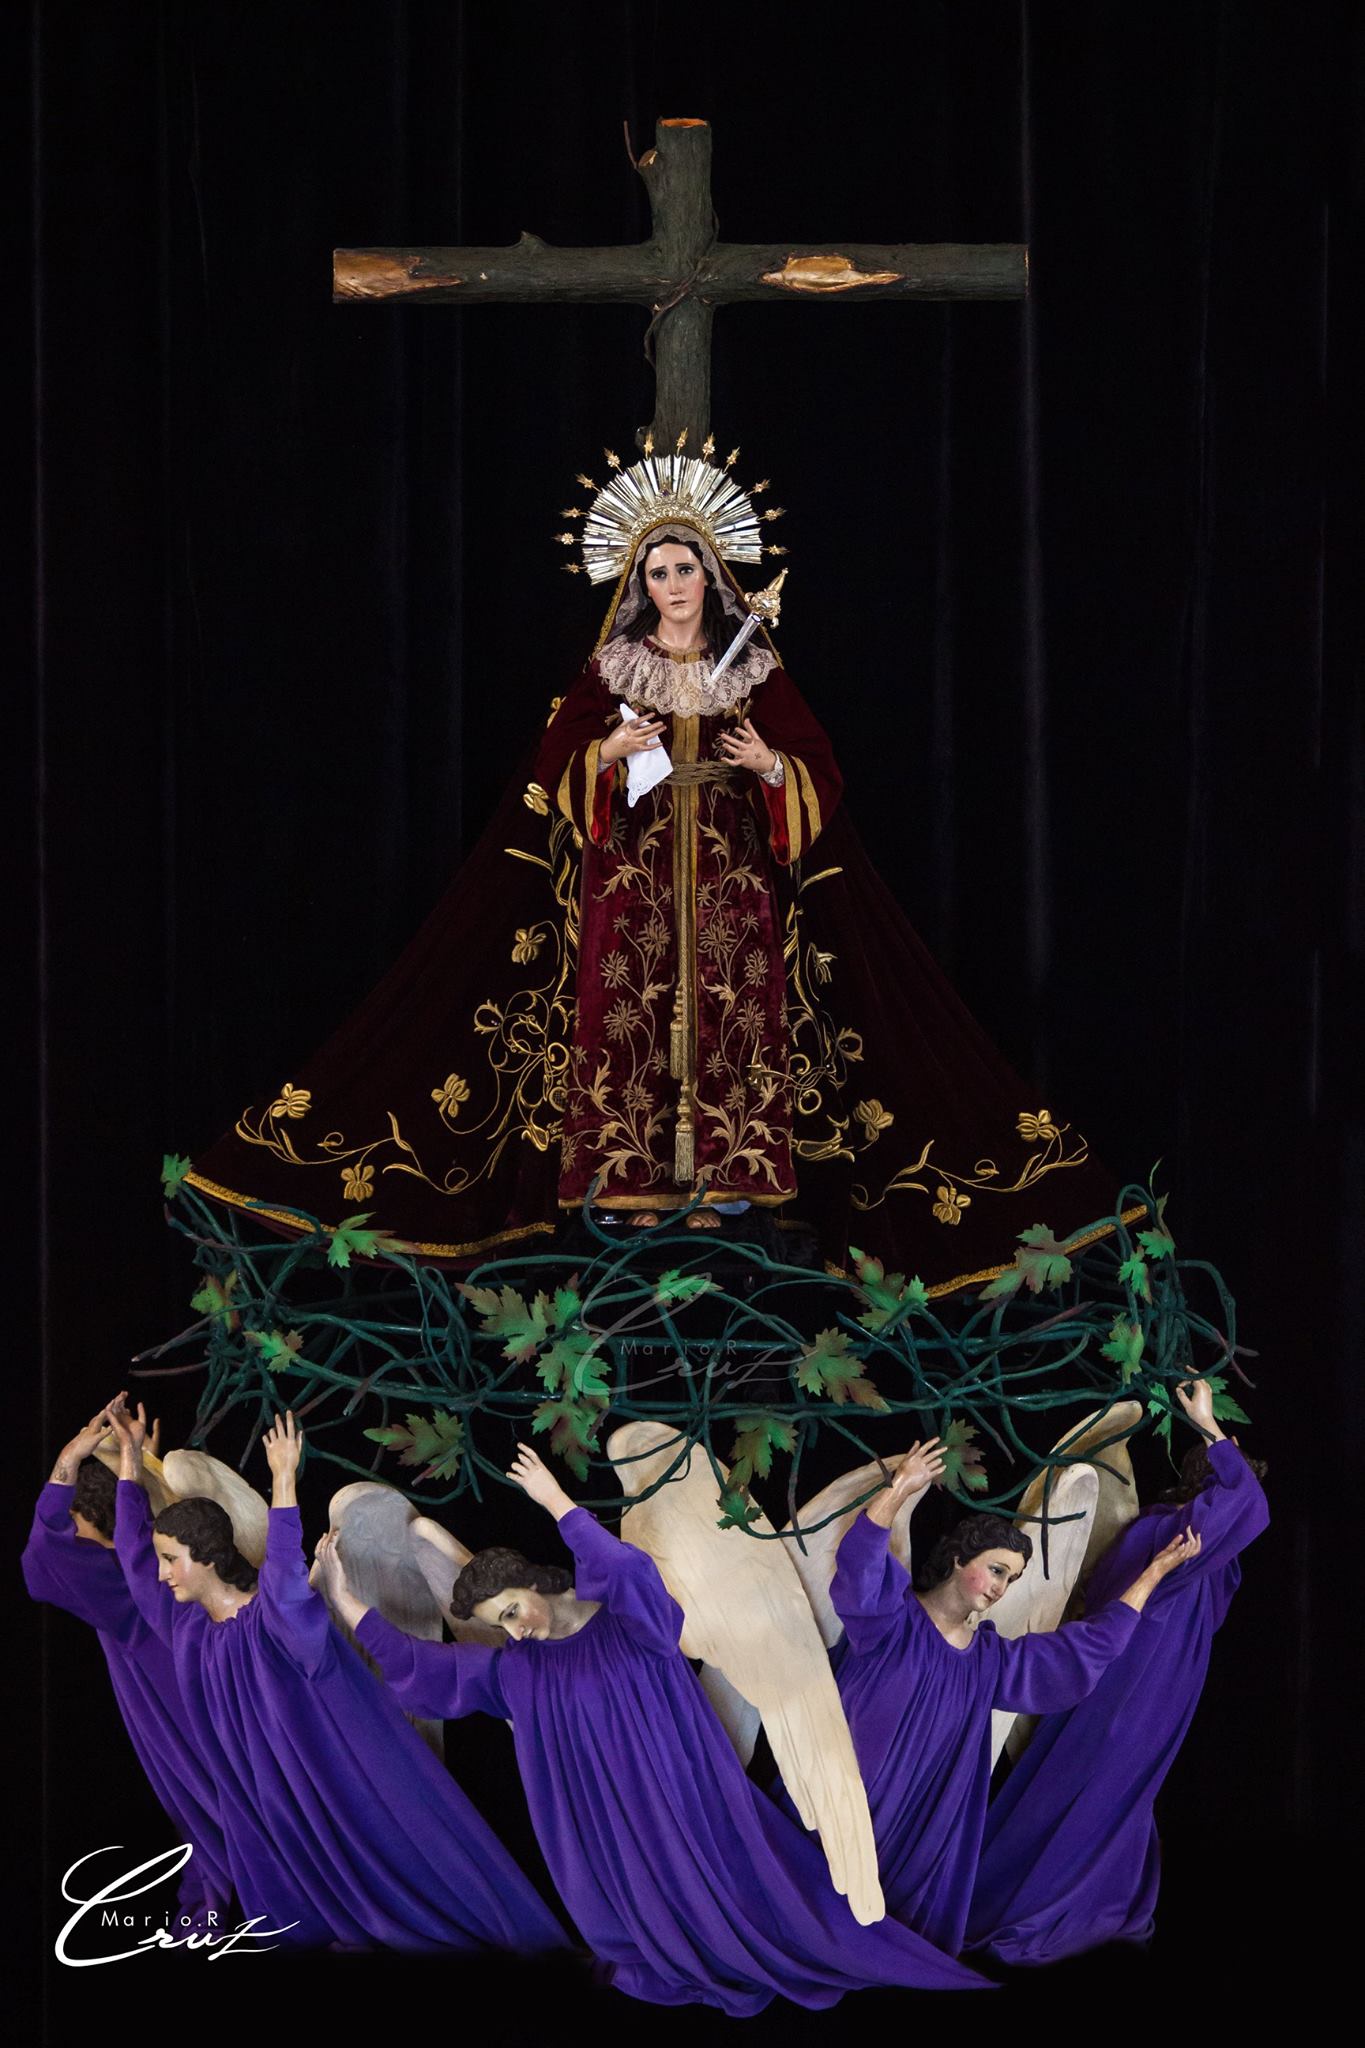 La escuela altarera guatemalteca en los altares y adornos procesionales